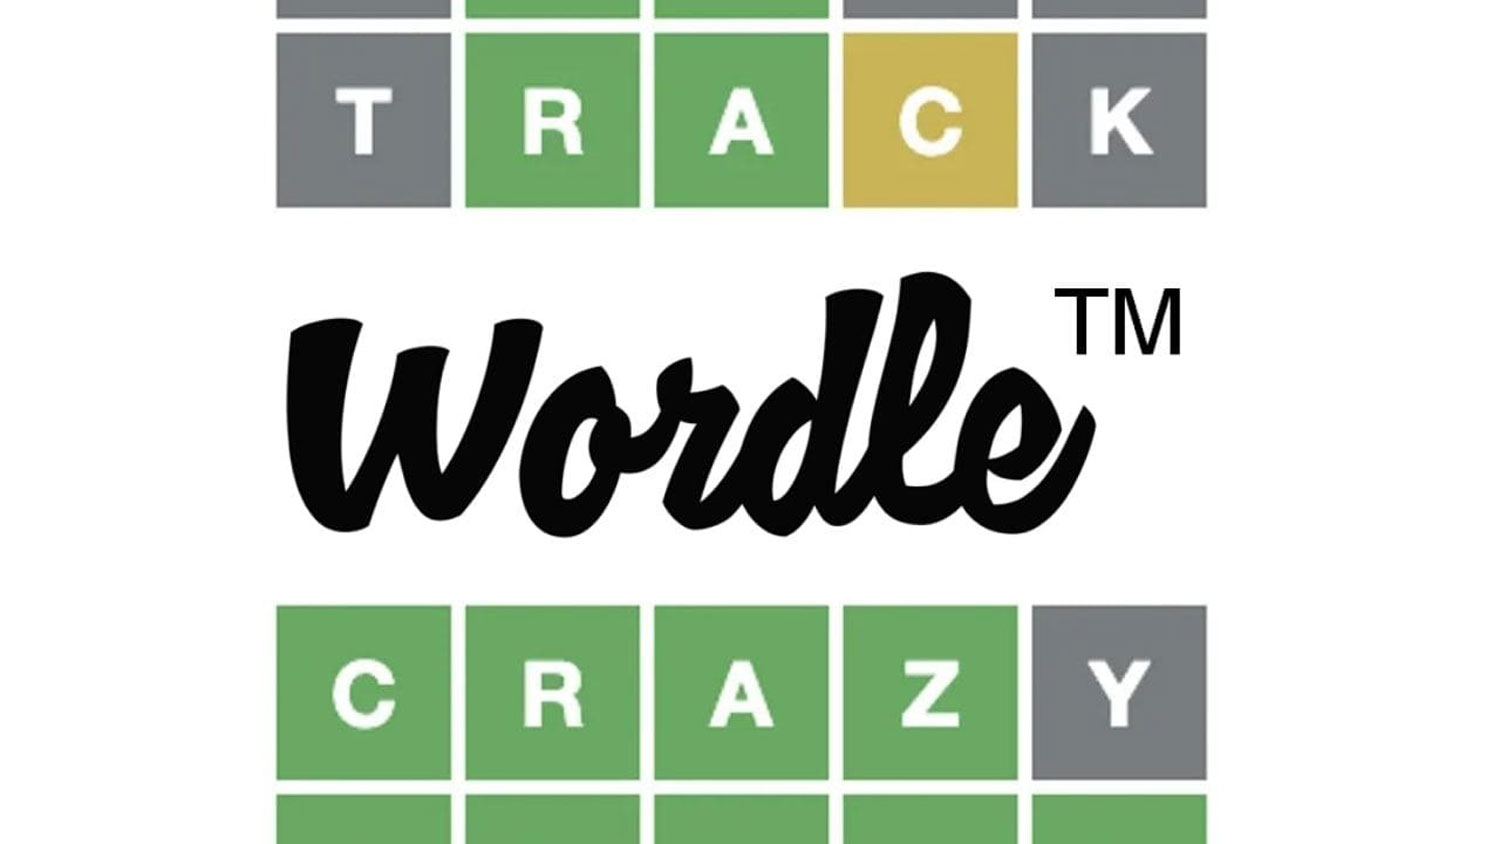 Permainan Tekaria Wordle Kini Dipindahkan Ke Laman New York Times